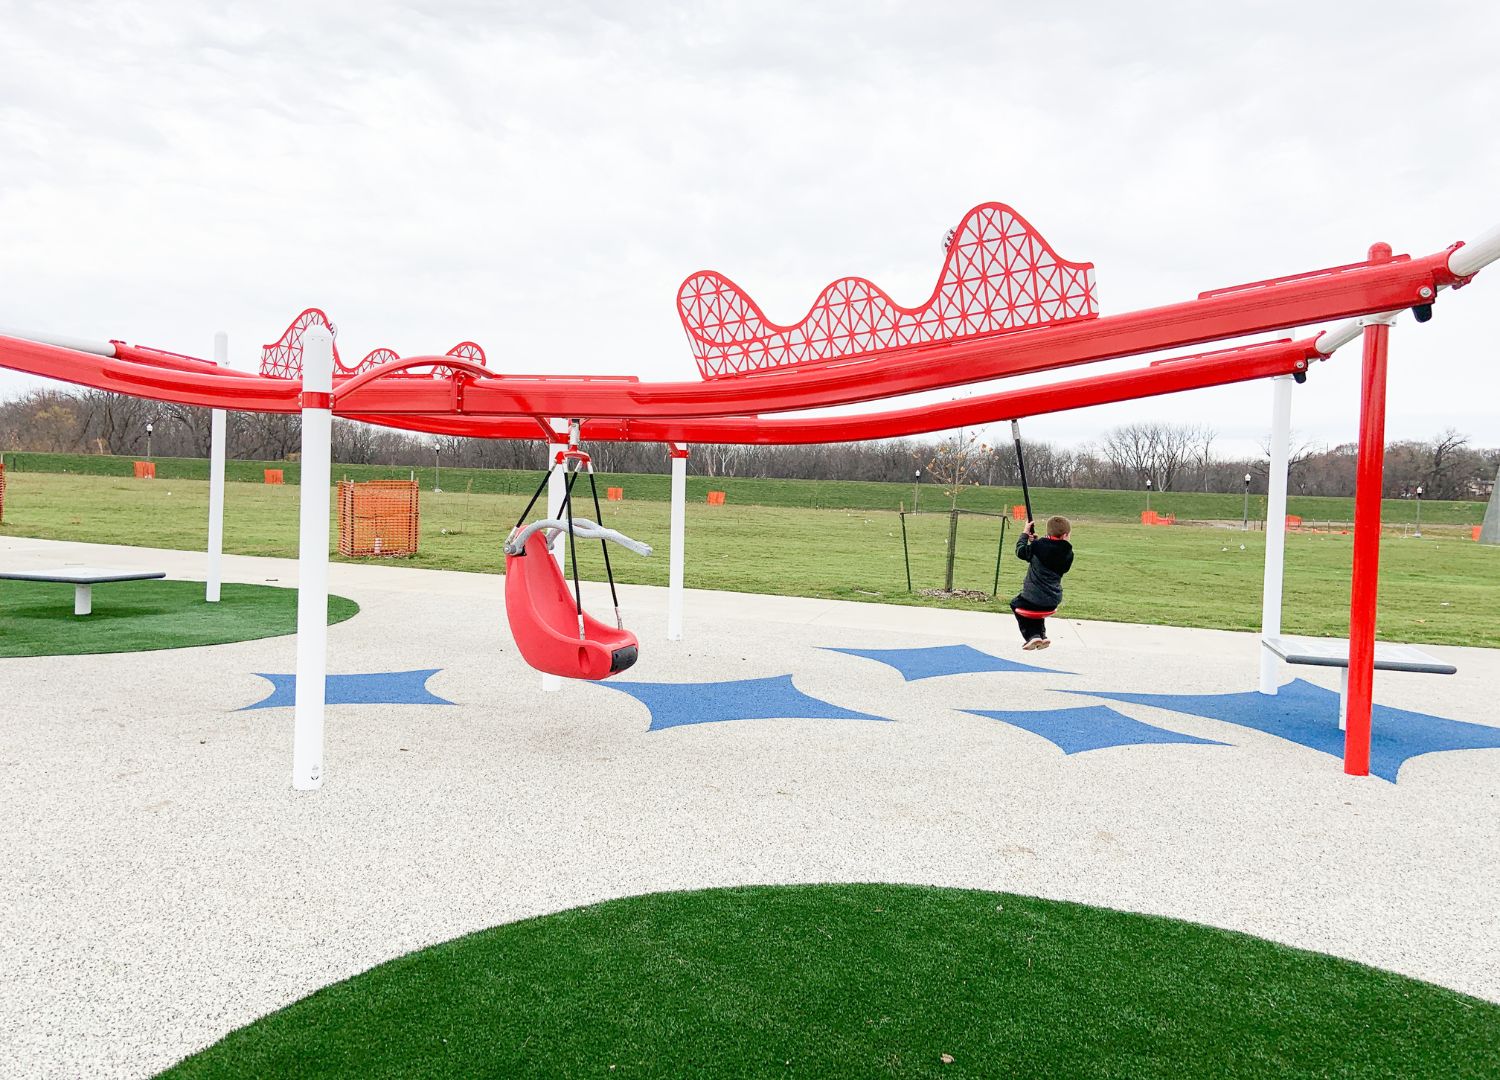 Playgrounds - Polk County Iowa